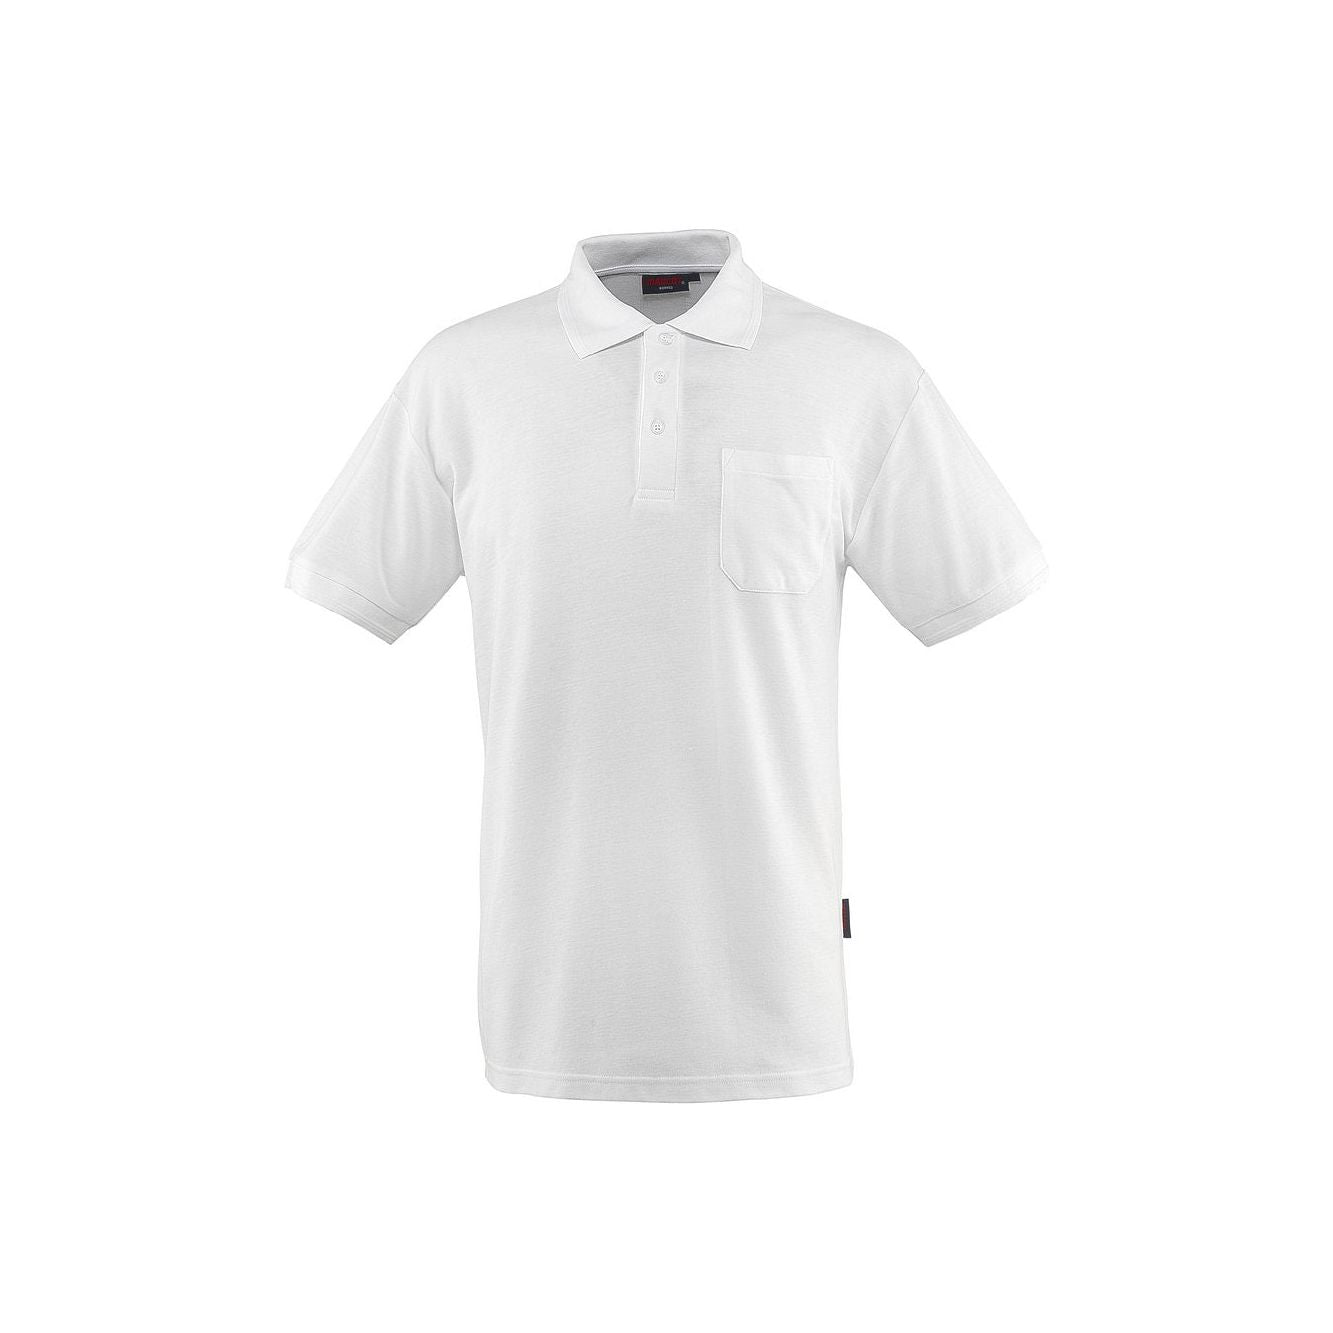 Mascot Borneo Polo Shirt White 00783-260-06 Front